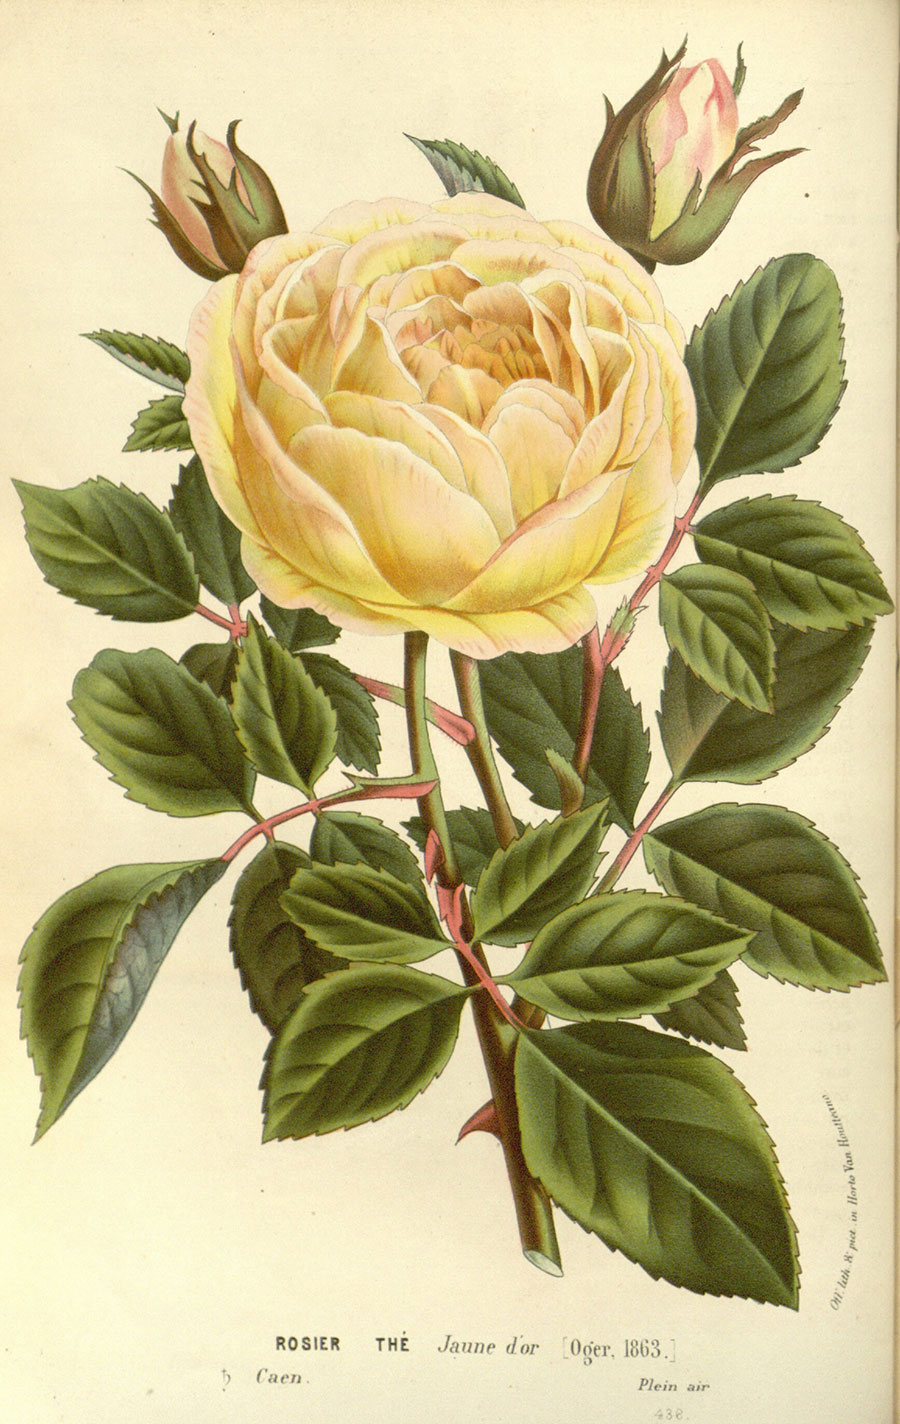 欧式花卉标本装饰画: 黄色玫瑰花  图片素材下载